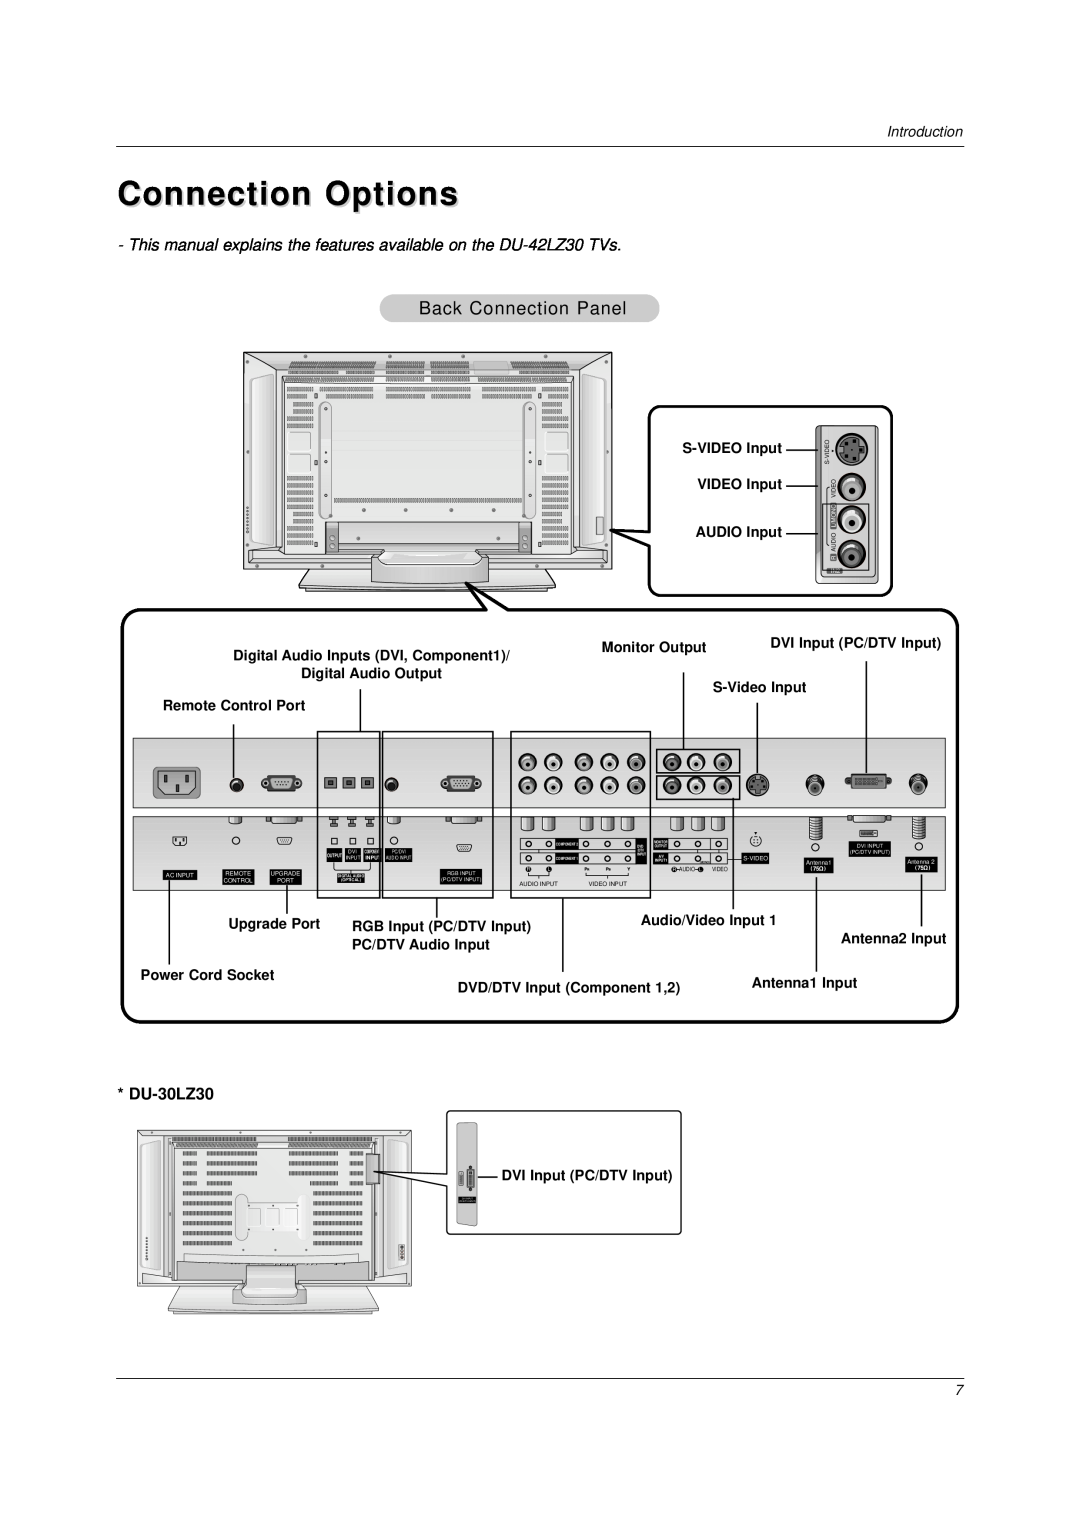 LG Electronics DU-37LZ30 Connection Options, This manual explains the features available on the DU-42LZ30 TVs, DU-30LZ30 